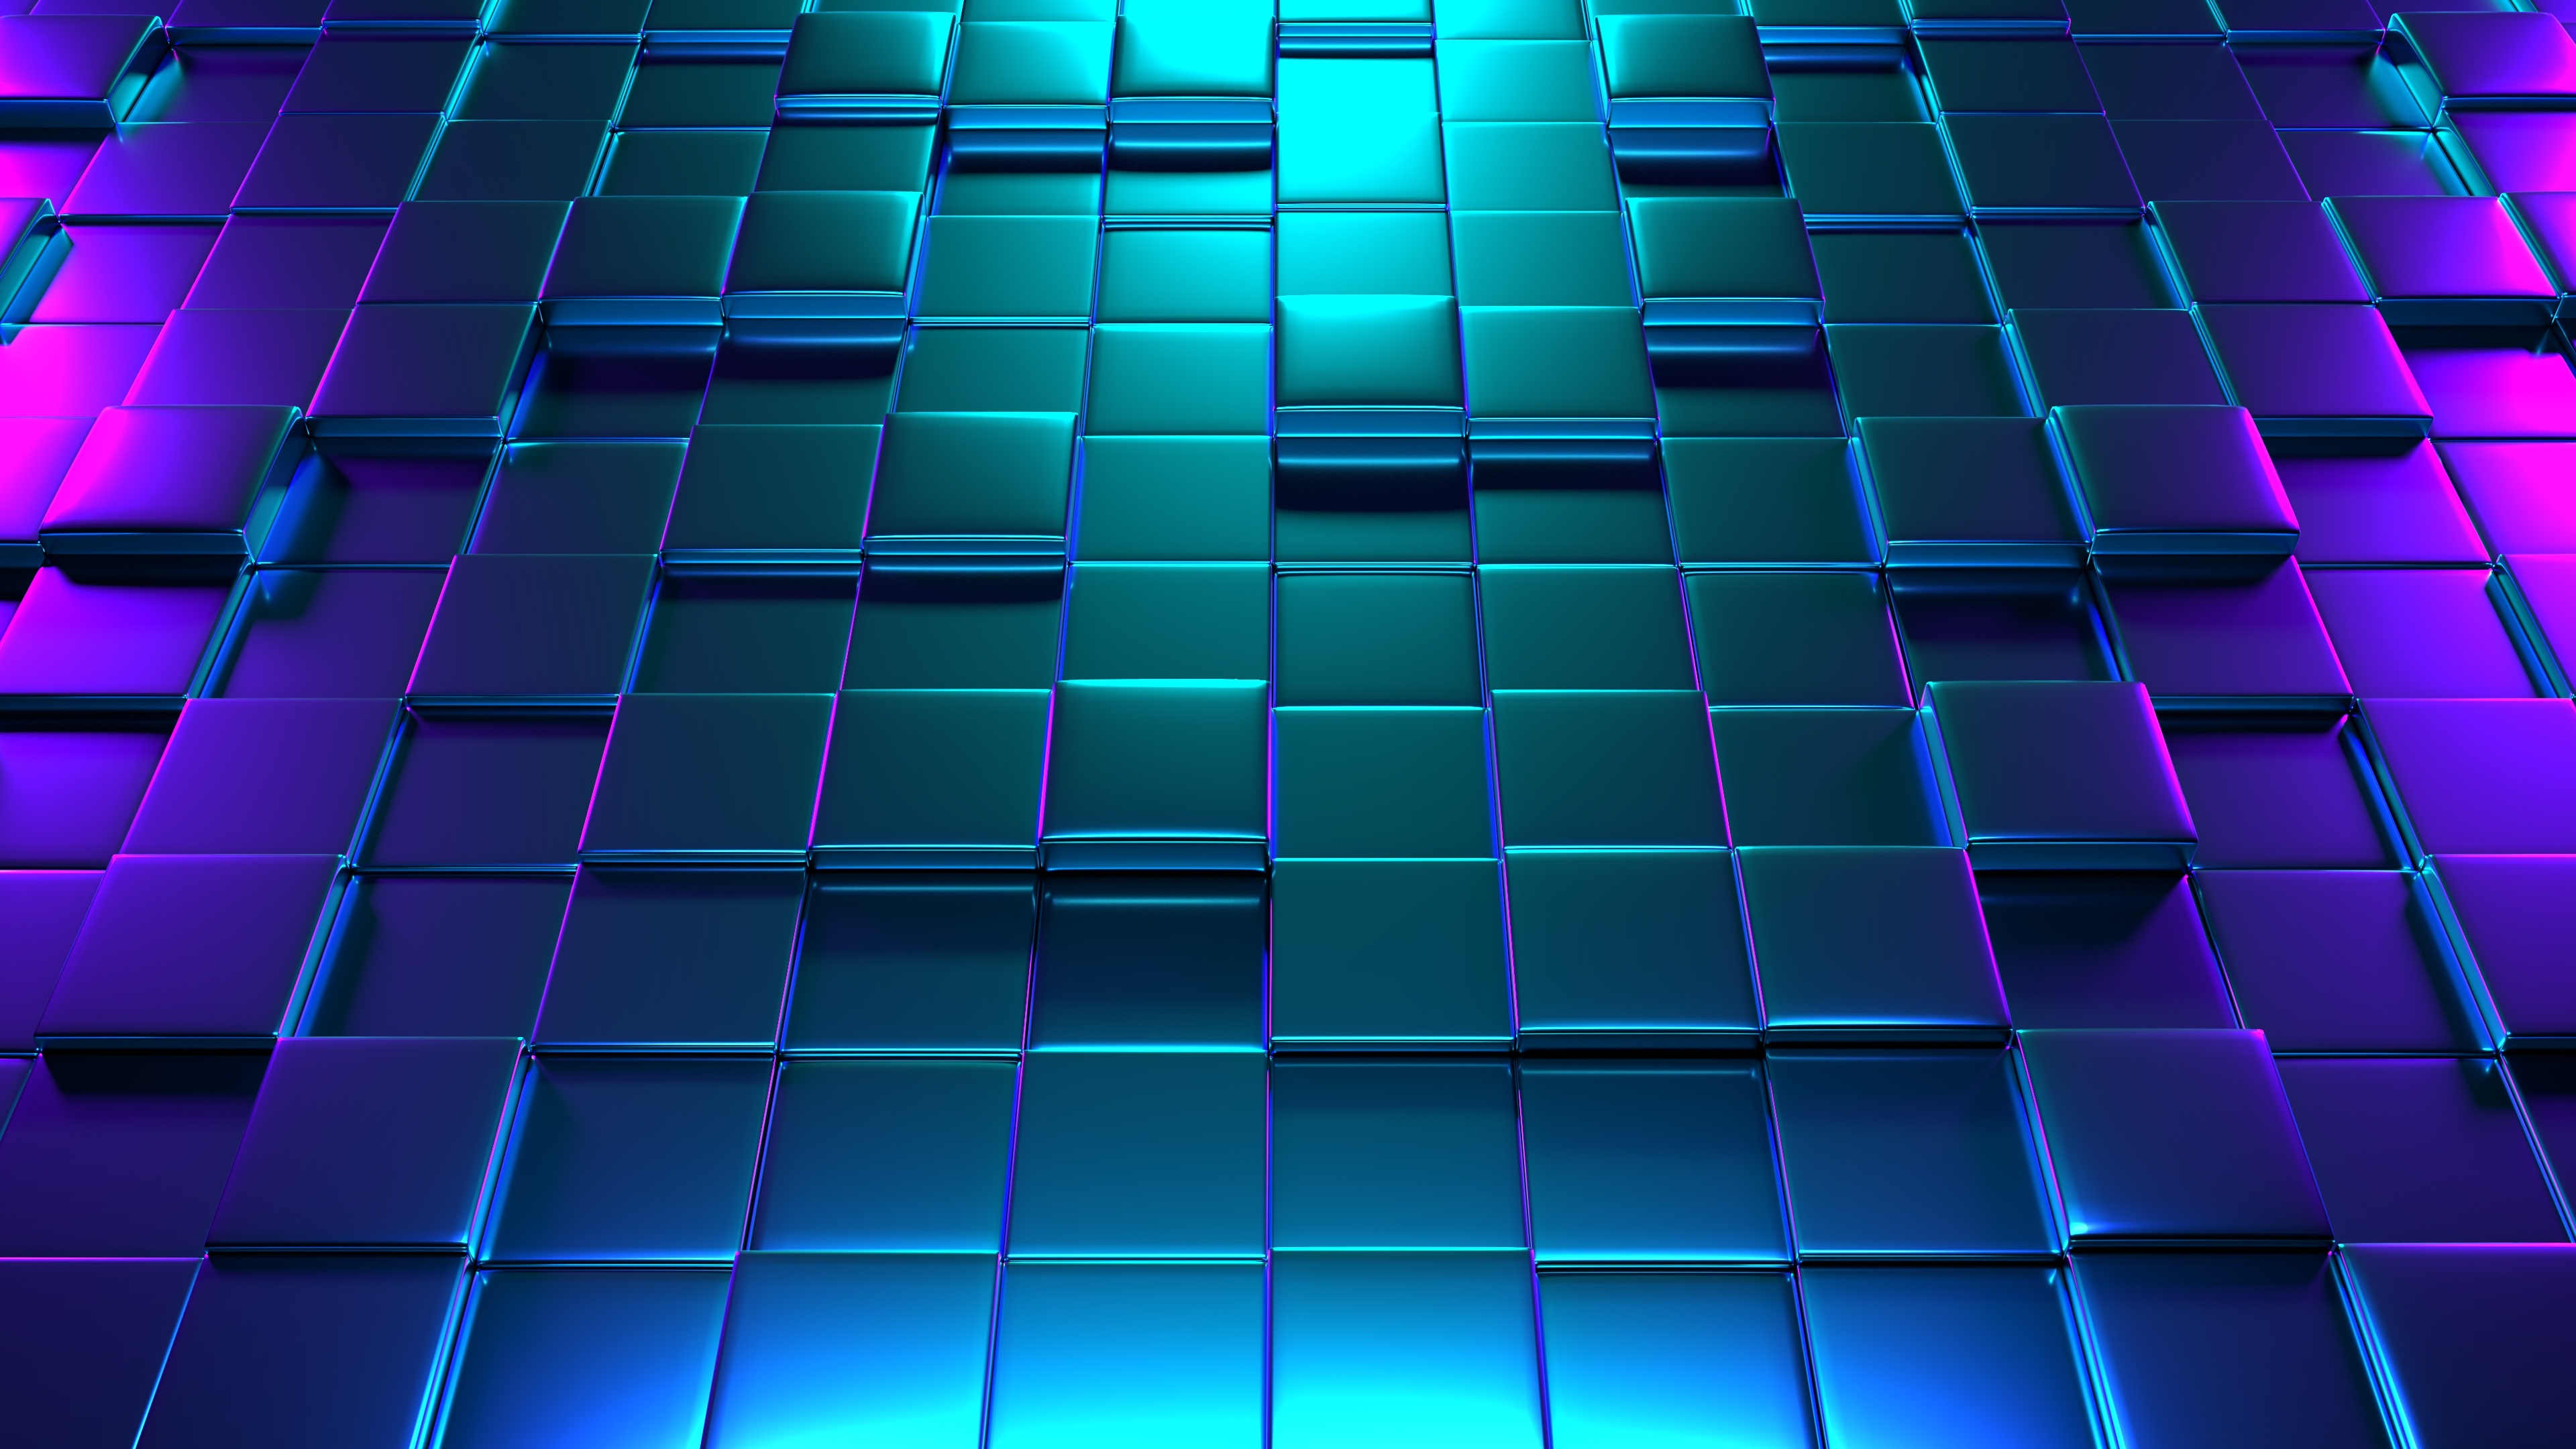 Với hình nền 3D Cube đầy chất lừ, bạn sẽ được đưa vào một không gian đầy màu sắc và chuyển động, đem lại sự mới mẻ cho thiết bị của bạn. Chắc chắn sẽ khiến bạn có những trải nghiệm thú vị!